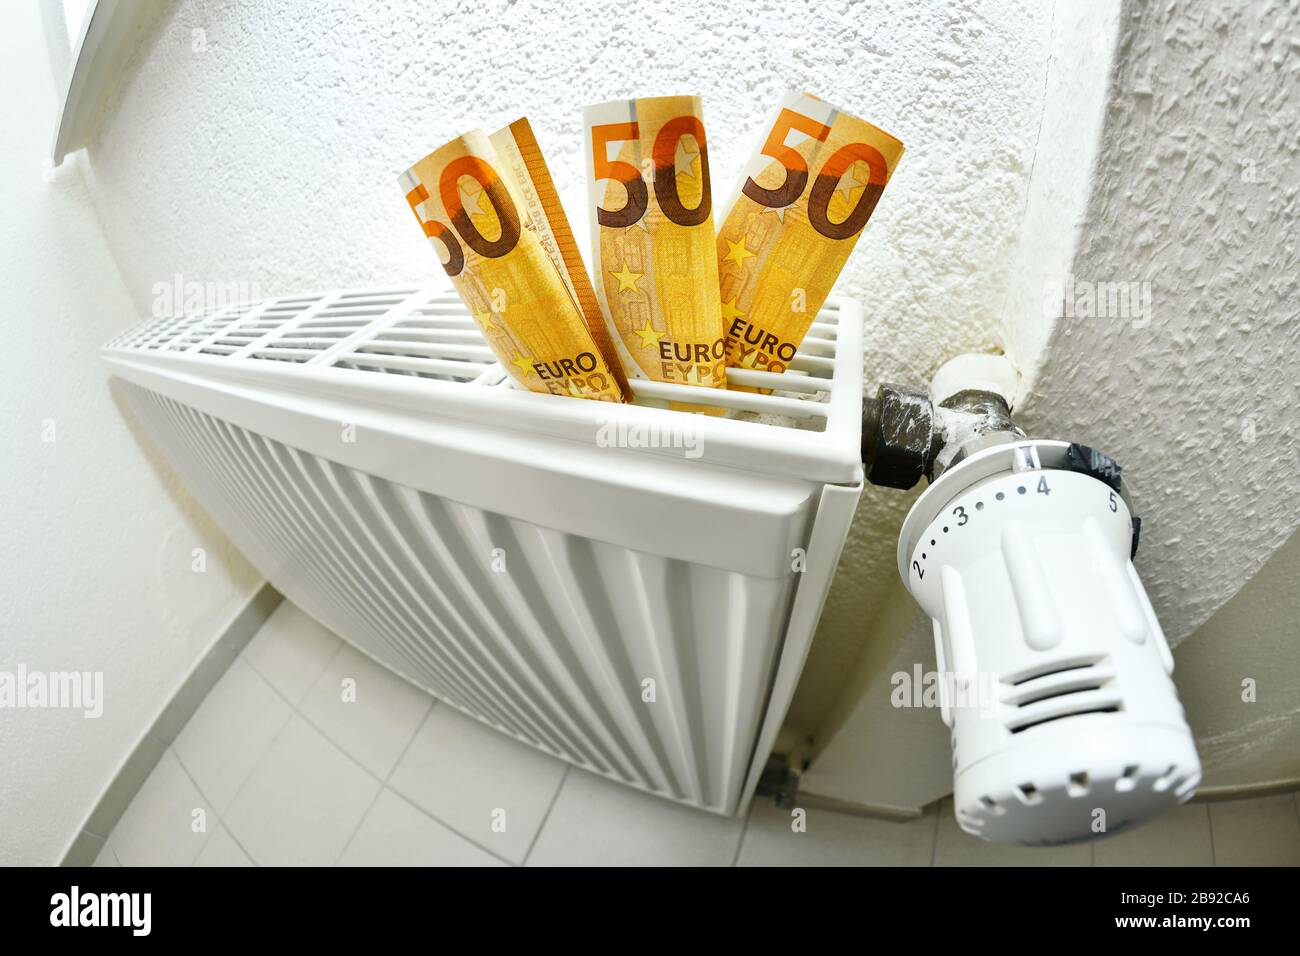 Heating with bank notes, rising heating costs, Heizung mit Geldscheinen, steigende Heizkosten Stock Photo